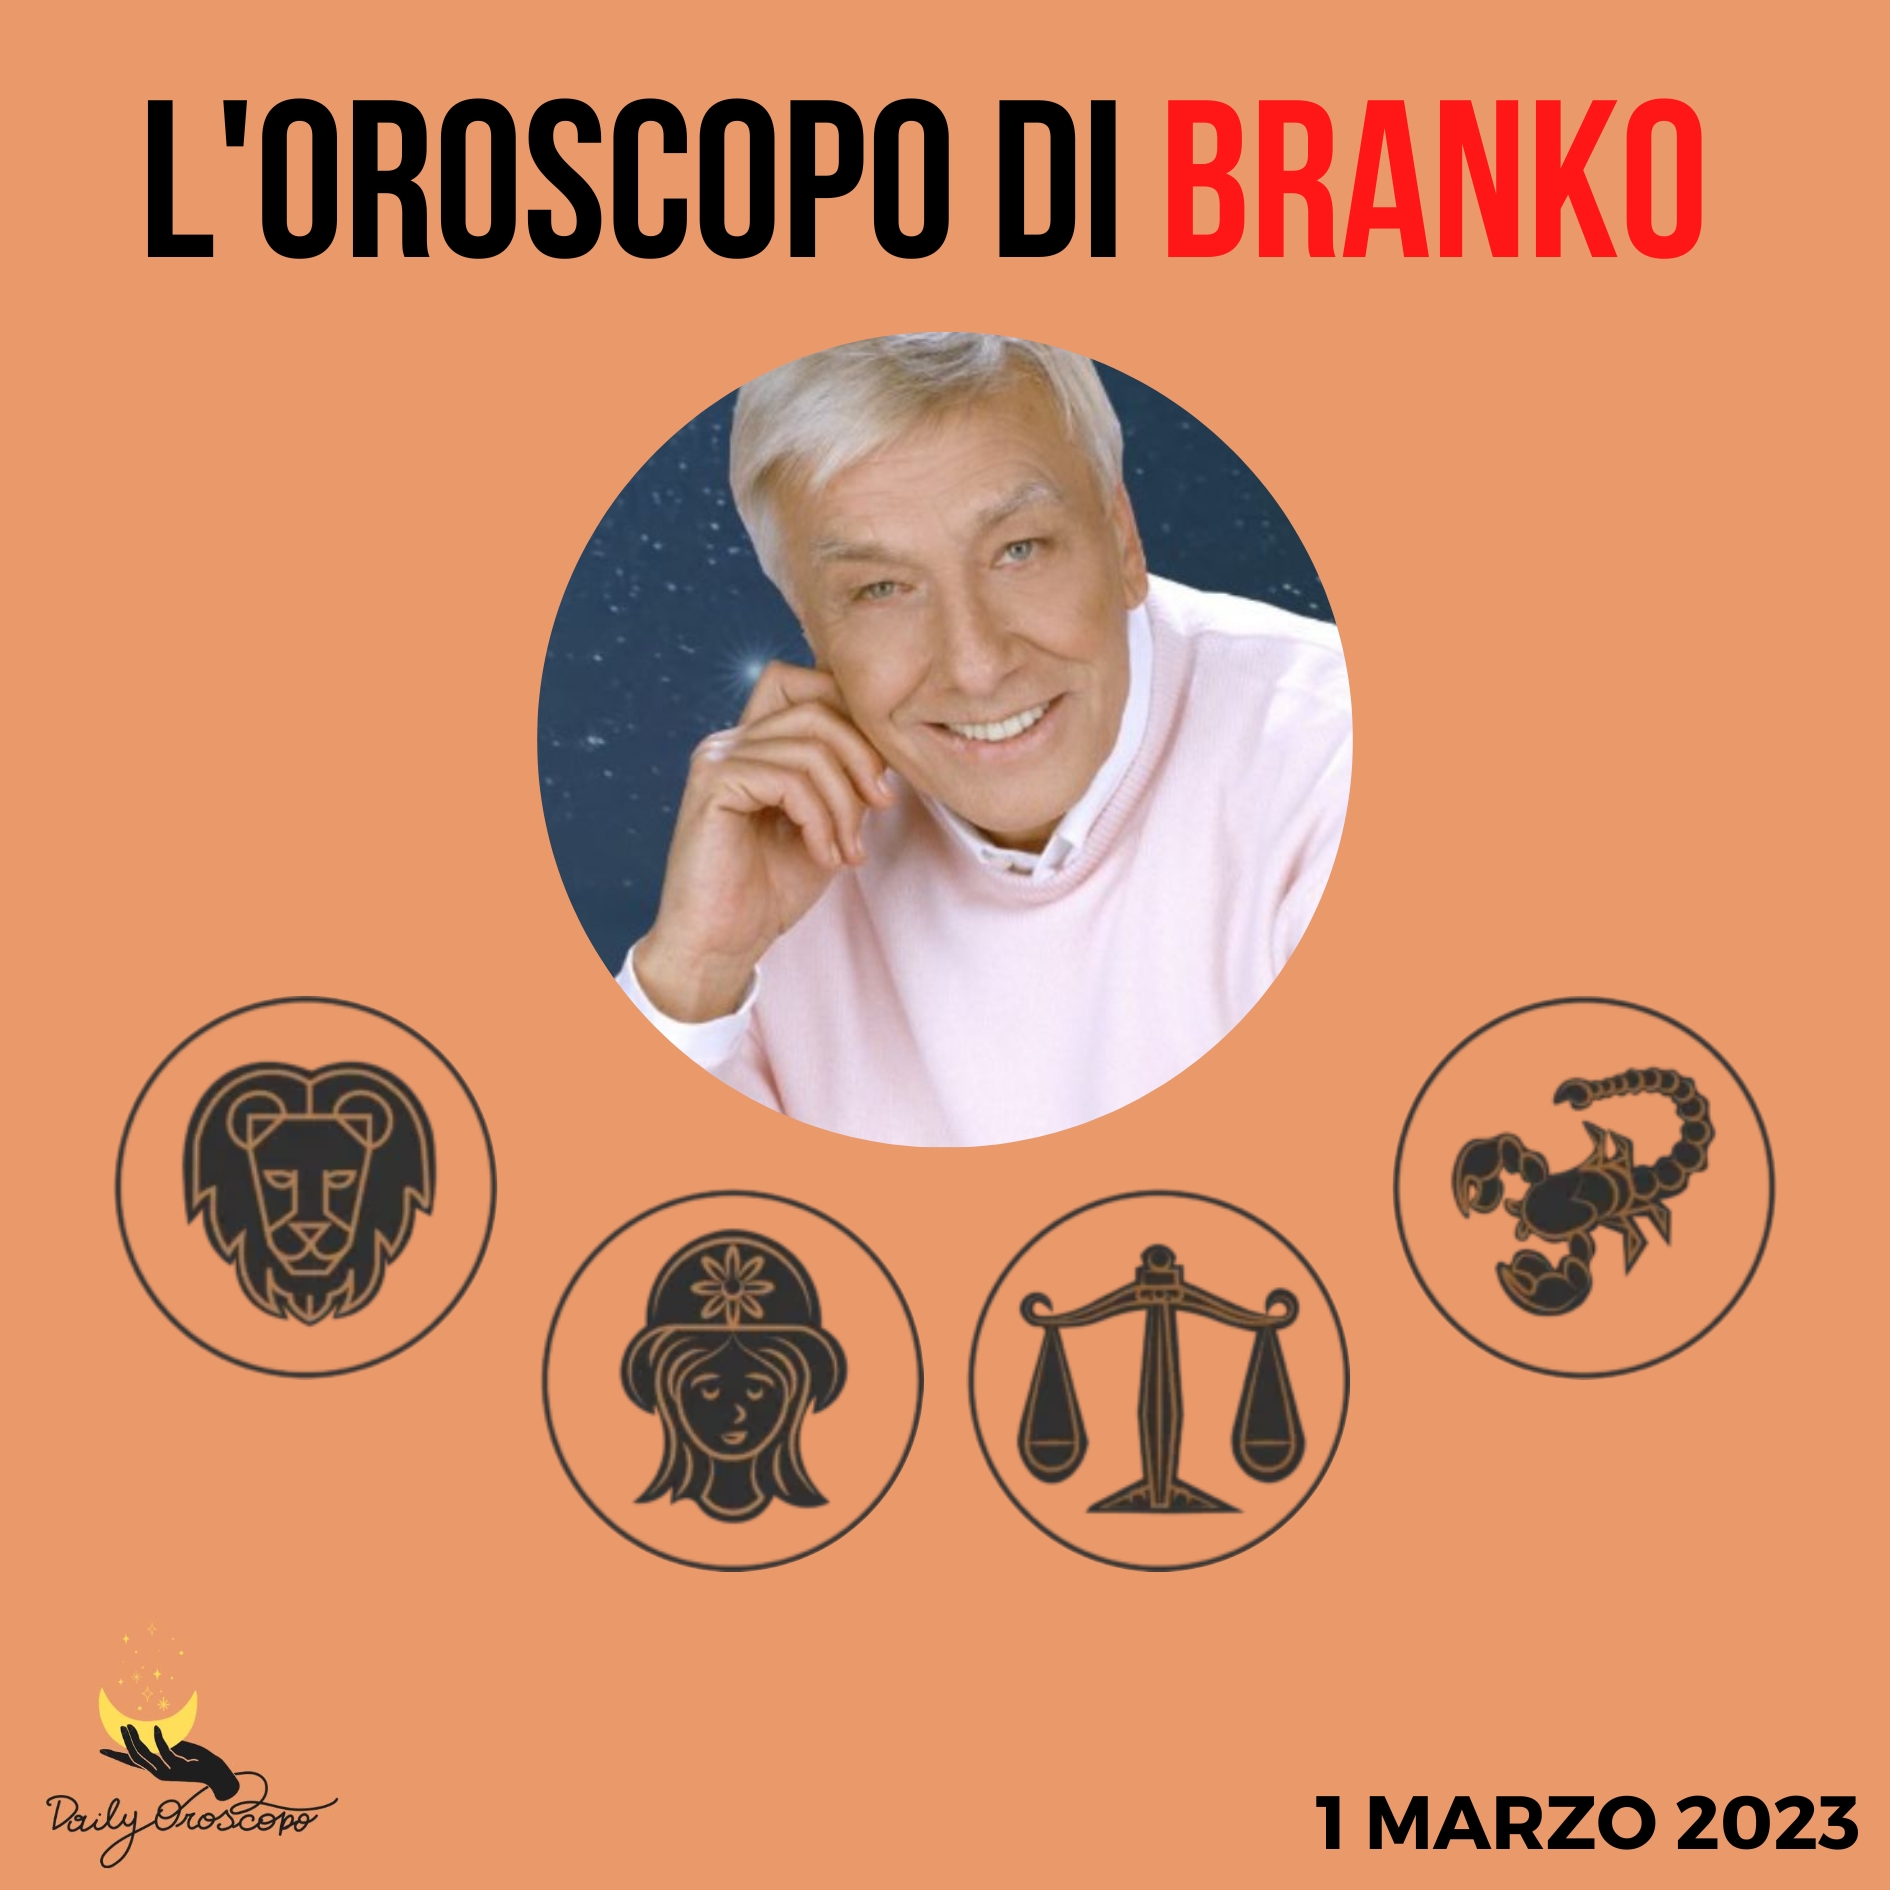 Oroscopo Branko 1 marzo: Leone, Vergine, Bilancia, Scorpione